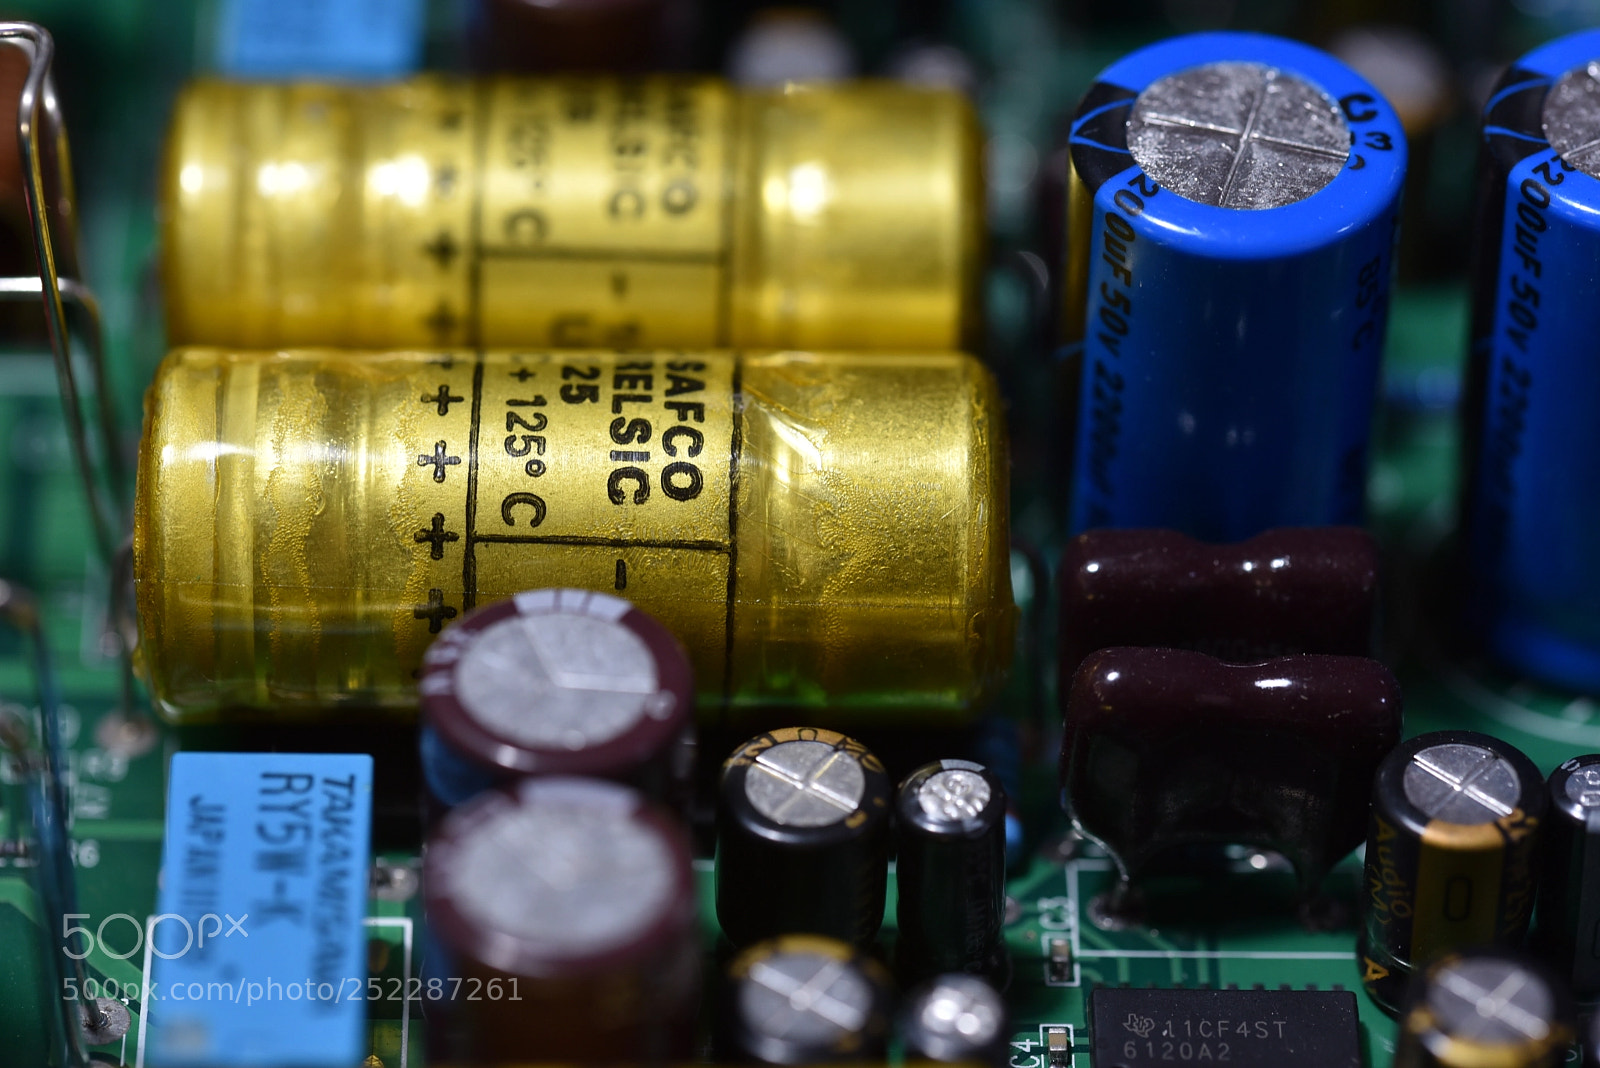 Nikon D750 sample photo. Beautiful capacitor photography